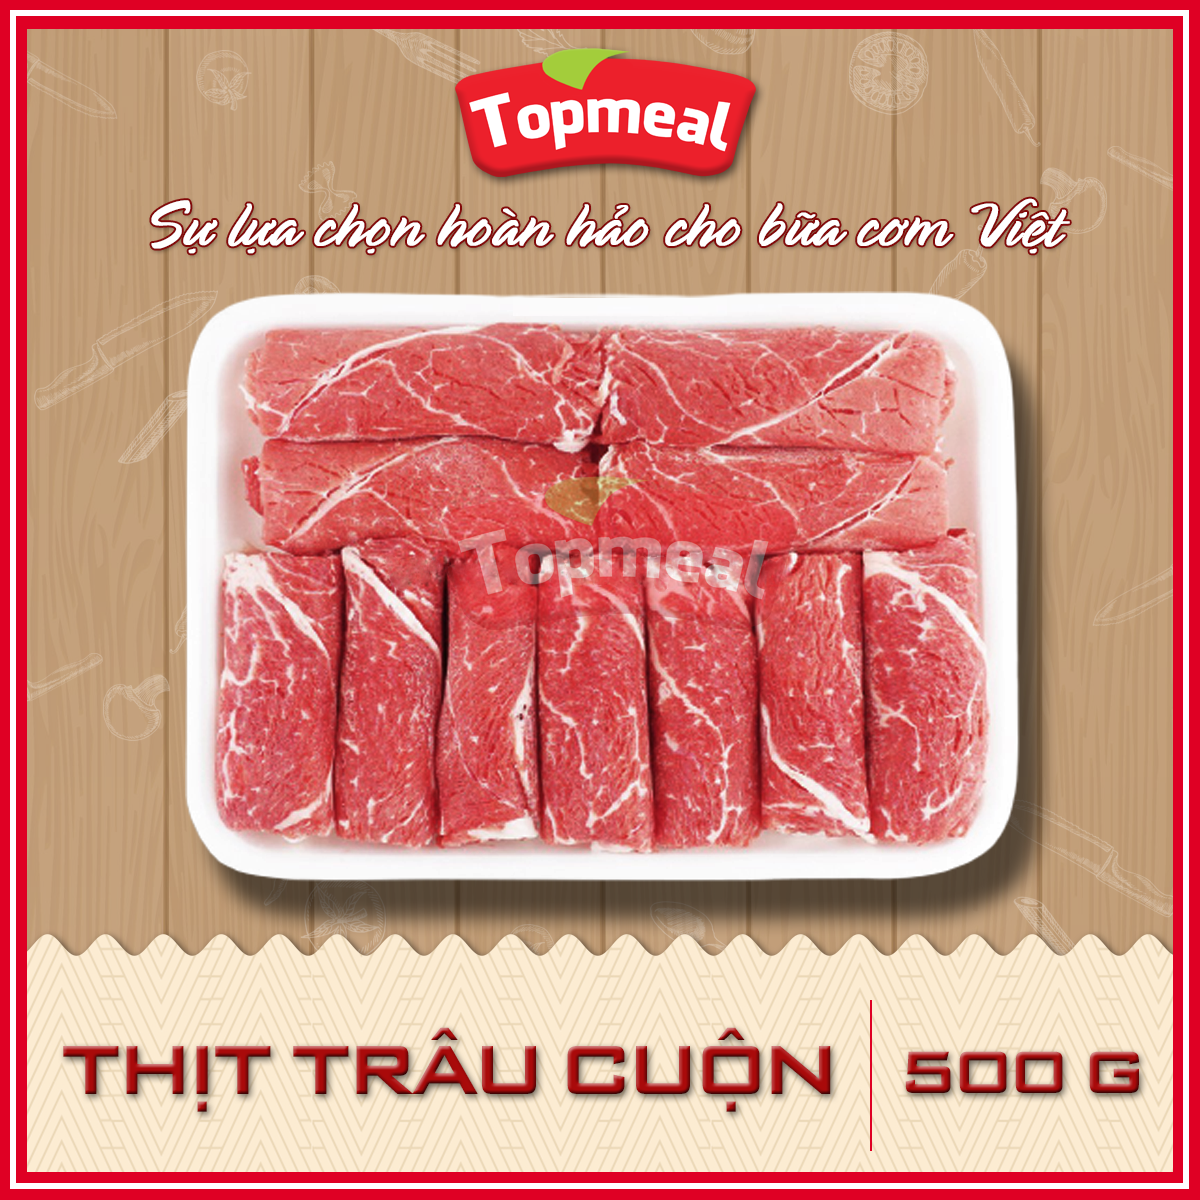 HCM - Thịt trâu cuộn 500g - Thích hợp với các món nướng BBQ, nhúng lẩu,...